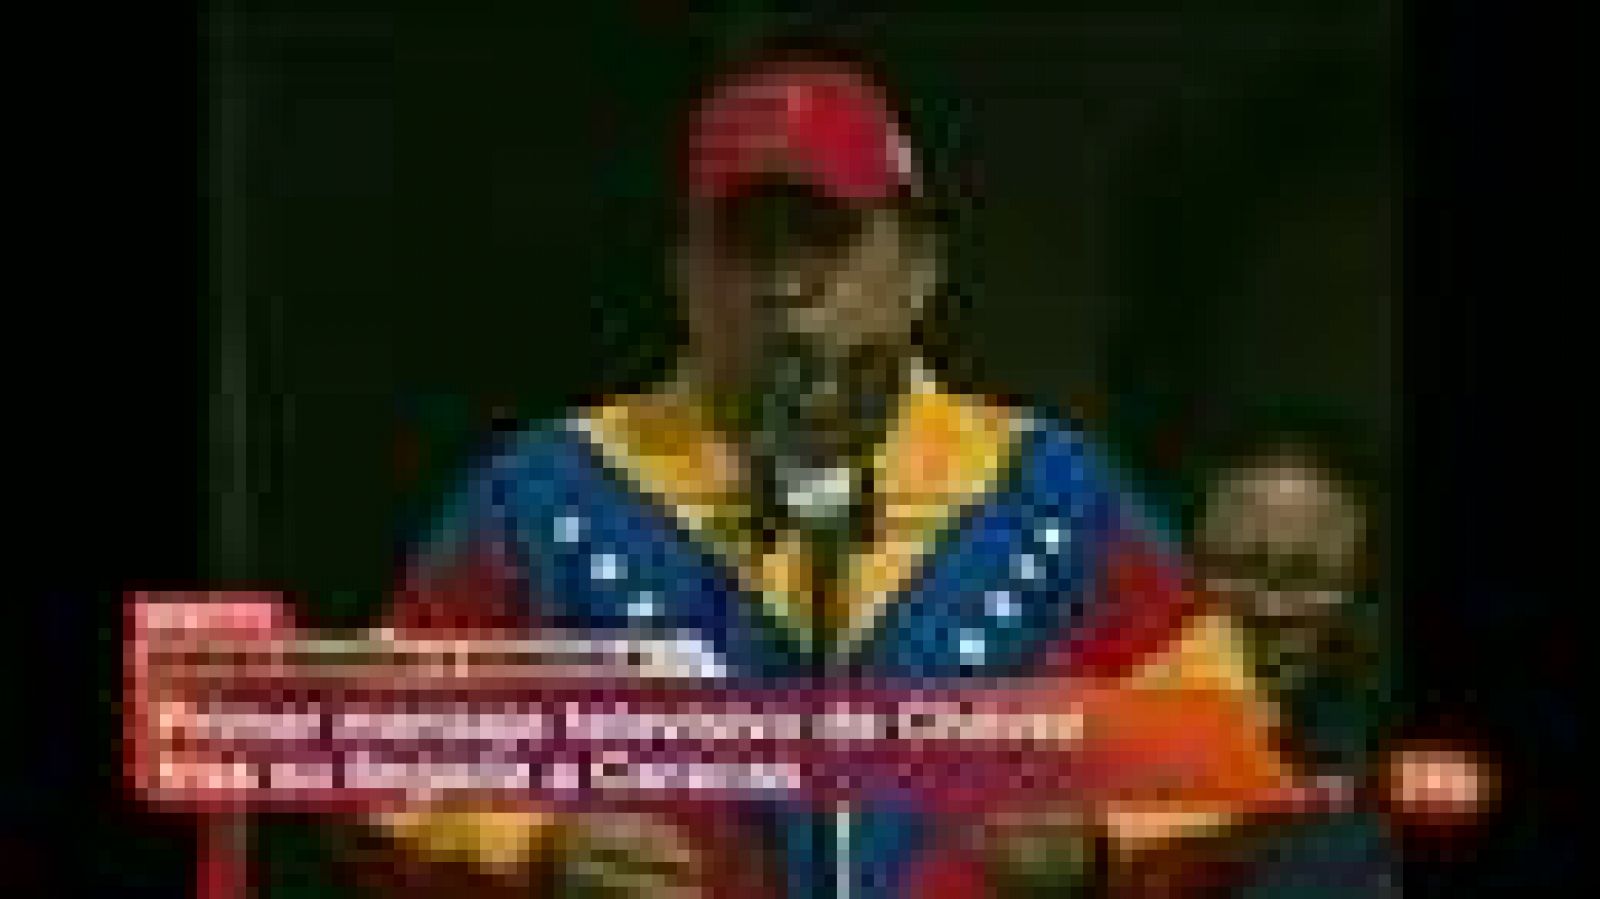   El presidente de Venezuela, Hugo Chávez,  ha  regresado  a  Caracas y  se ha dirigido a los venezolanos desde el balcón del Palacio de Miraflores, en Caracas.  Chávez, llegó esta madrugada a Caracas tras tres semanas  en Cuba donde le extirparon un tumor canceroso.